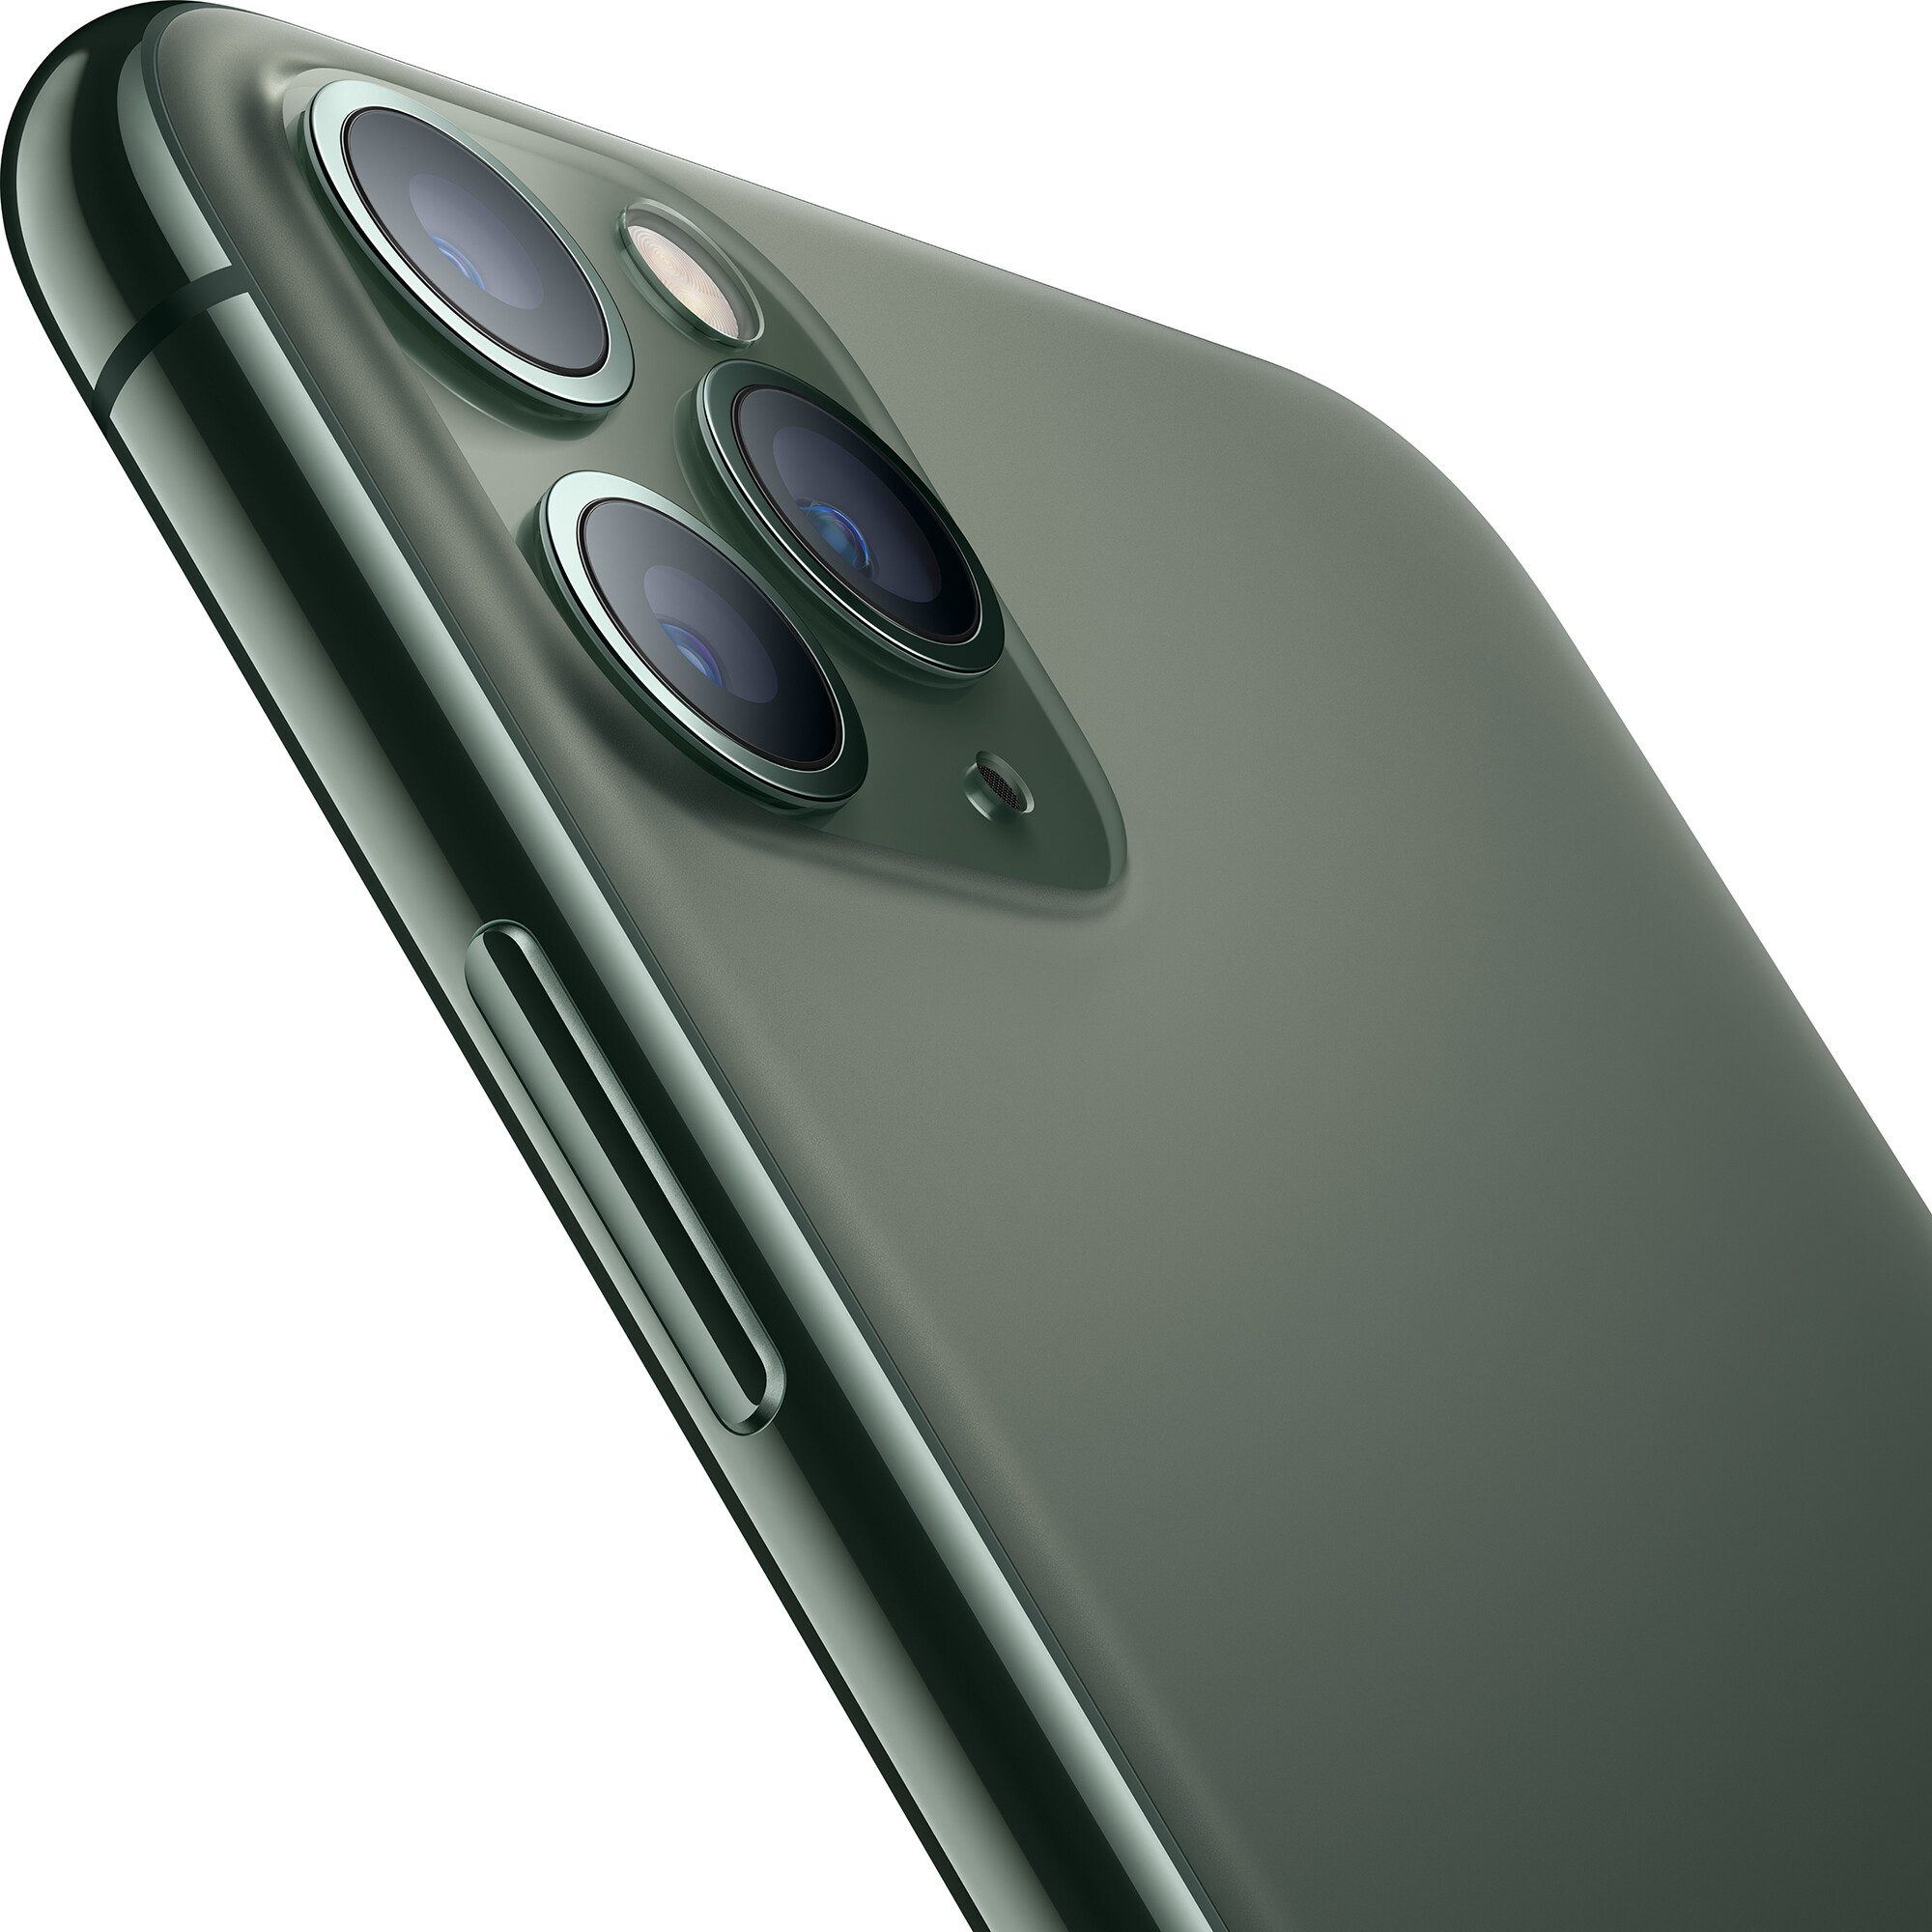  Apple iPhone 11 Pro Max Dual SIM 512GB Midnight Green 